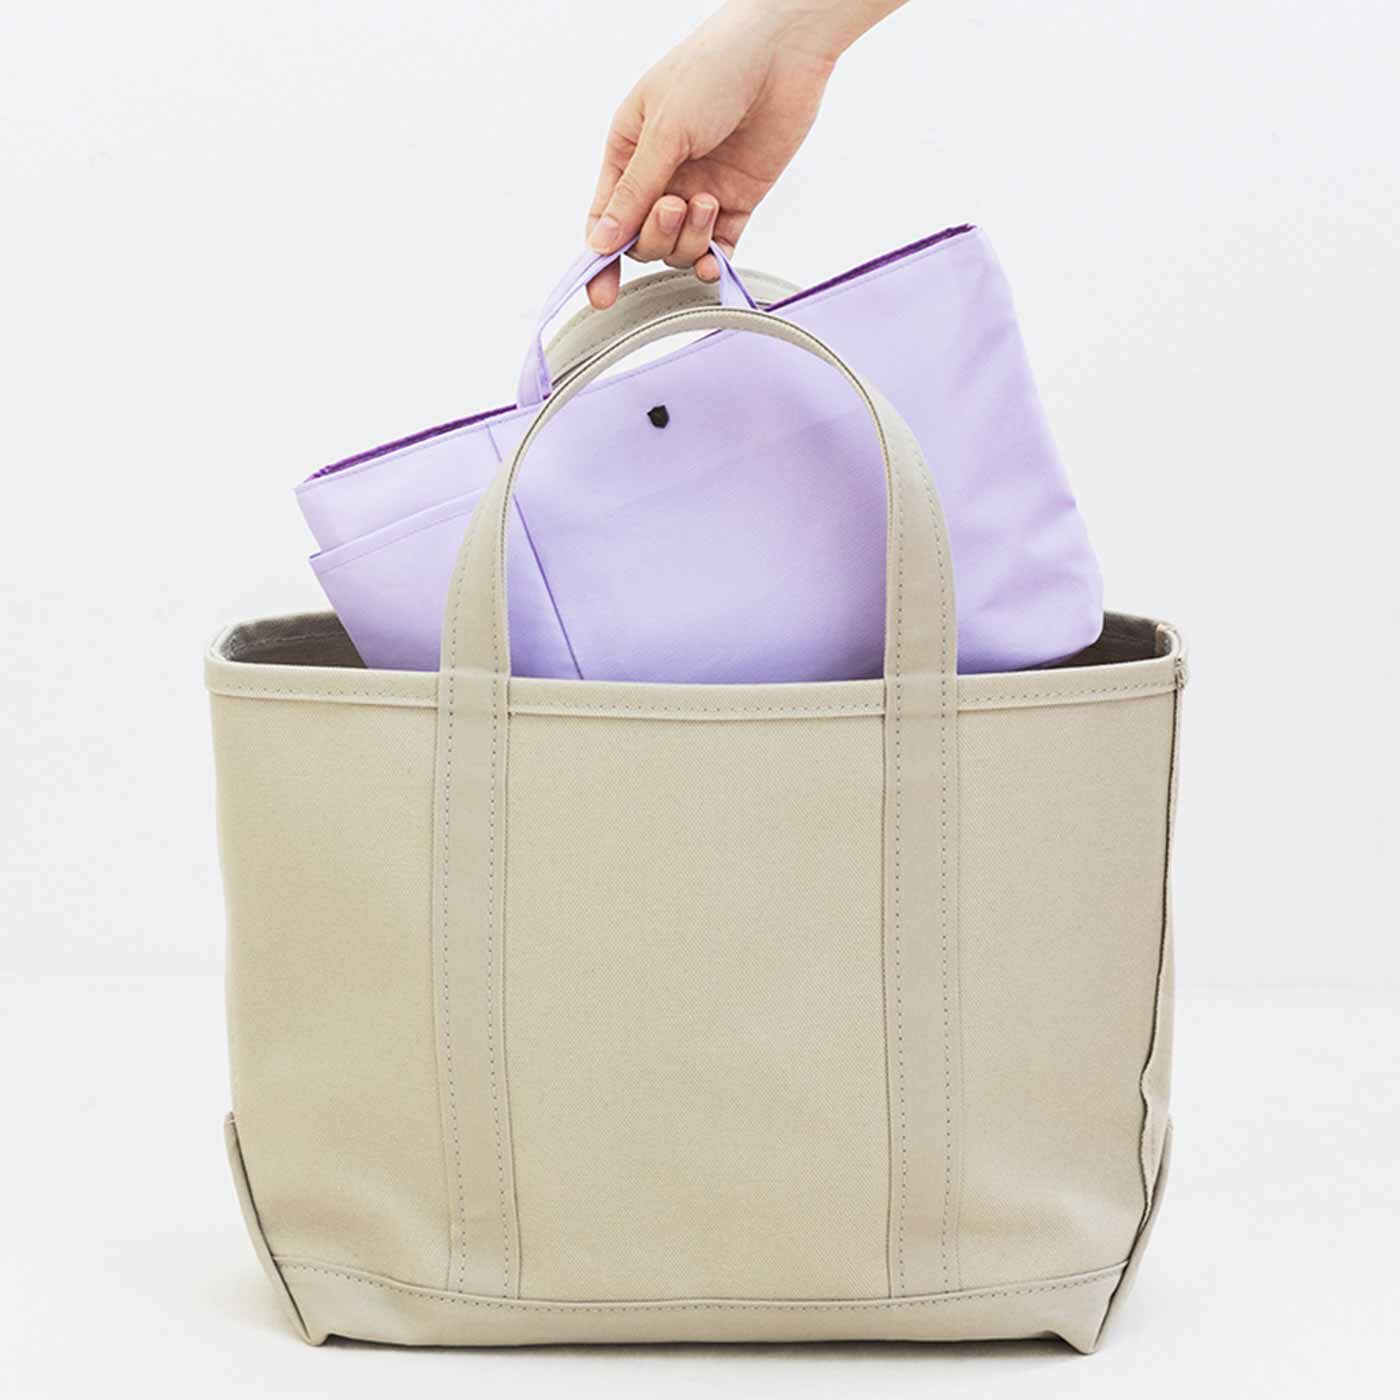 フェリシモの雑貨 Kraso|エッセイスト・整理収納アドバイザー 柳沢 小実さんと作った バッグの中すっきり 横長バッグインポケットの会|ポケットのないバッグに入れて、すっきり収納。